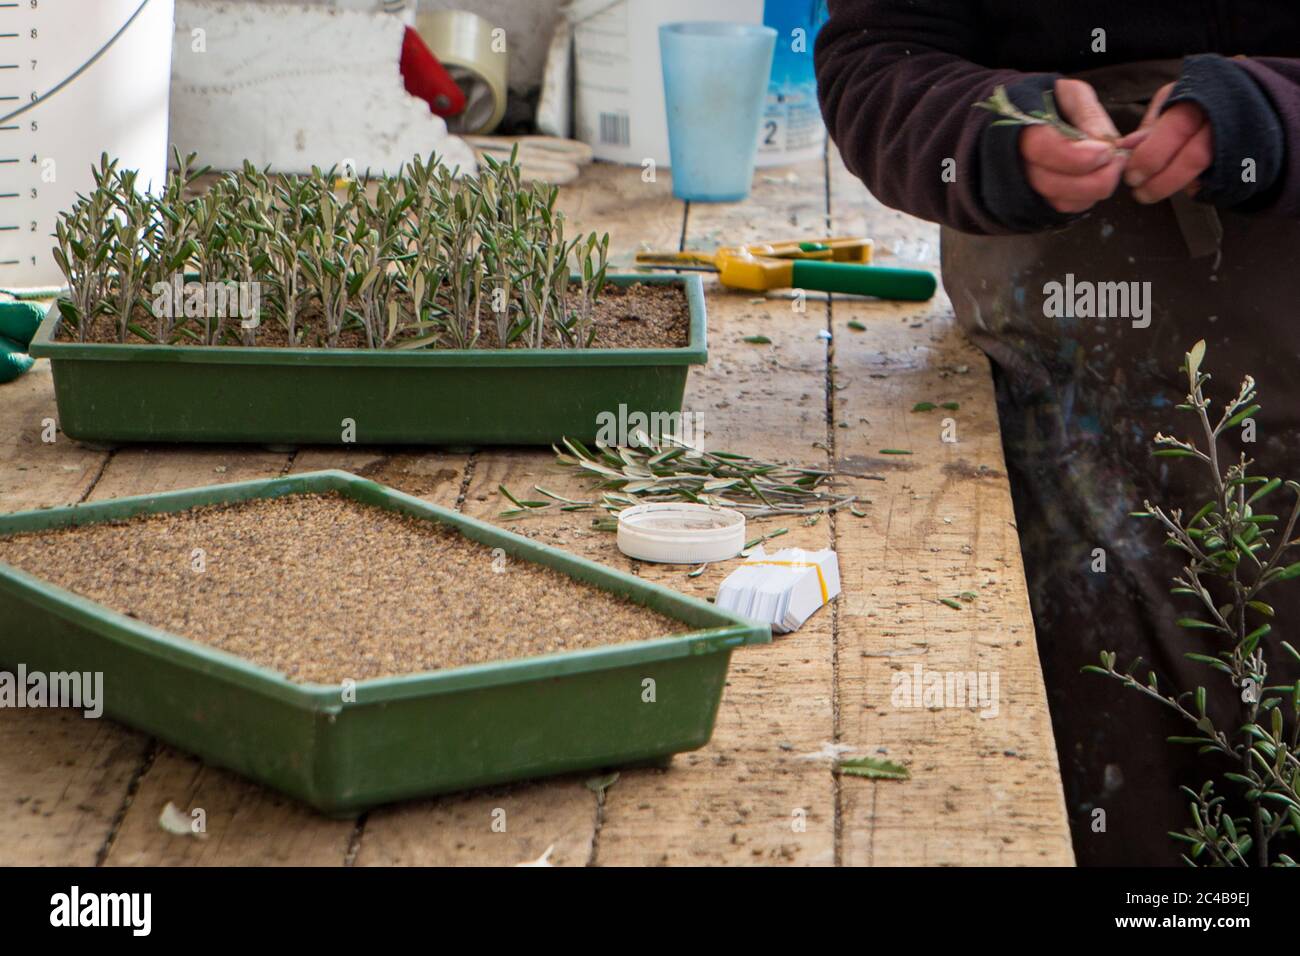 Propagación de plantas. Un trabajador de vivero toma esquejes de plantas nativas y las planta en bandejas para desarrollar raíces Foto de stock